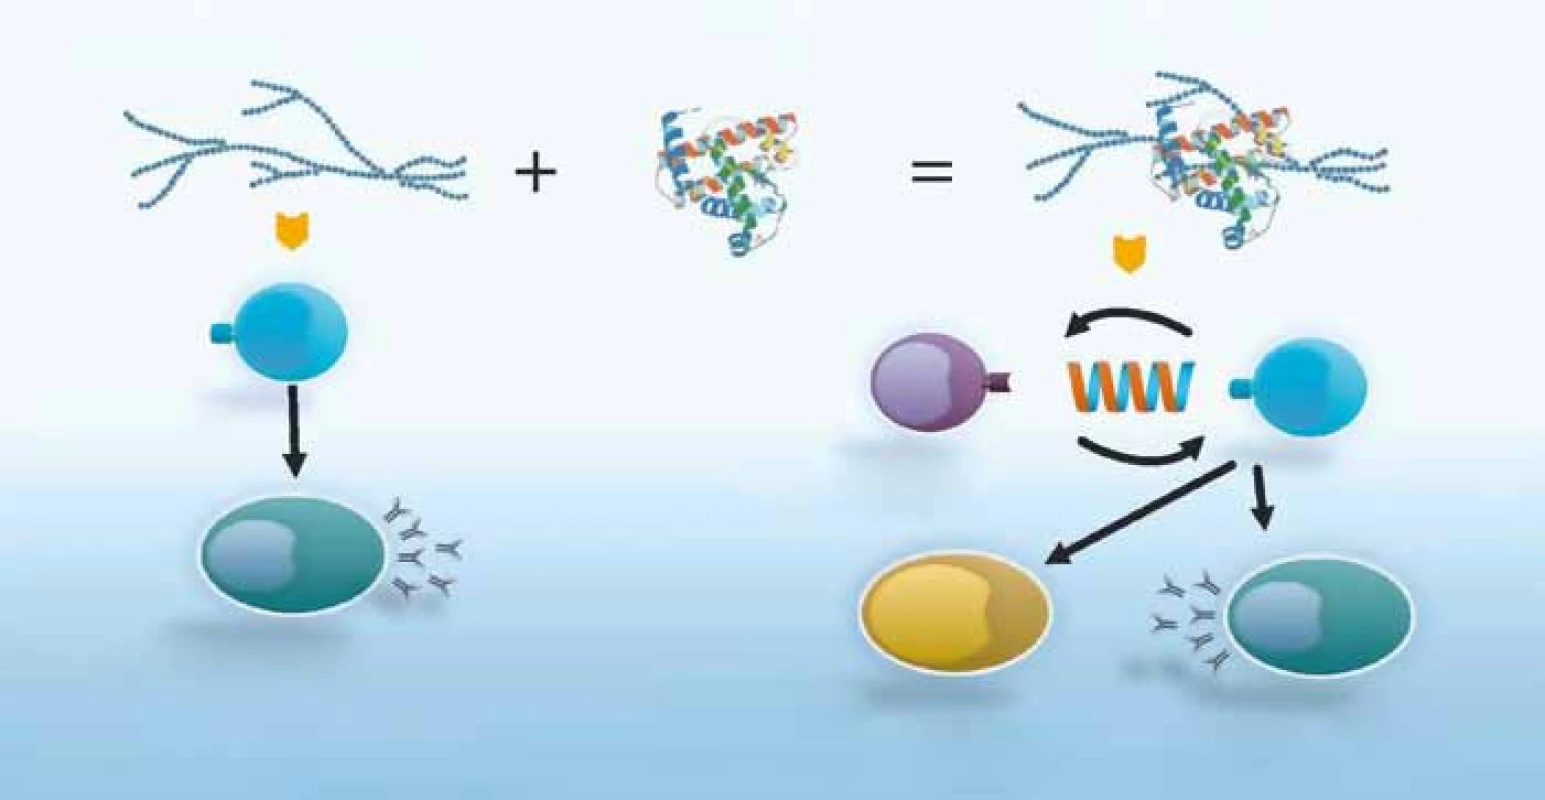 Rozdíl v imunitní odpovědi na polysacharidovou a konjugovanou vakcínu. Konjugace s bílkovinným nosičem vede k tvorbě protilátek s vysokou funkční aktivitou a k produkci paměťových B lymfocytů [3,4].
Fig. 1. The difference in immunologic response to polysaccharide and conjugate vaccine. Conjugation with protein carrier stimulates production of highly active antibodies as well as differentiation of memory B-cells [3,4].